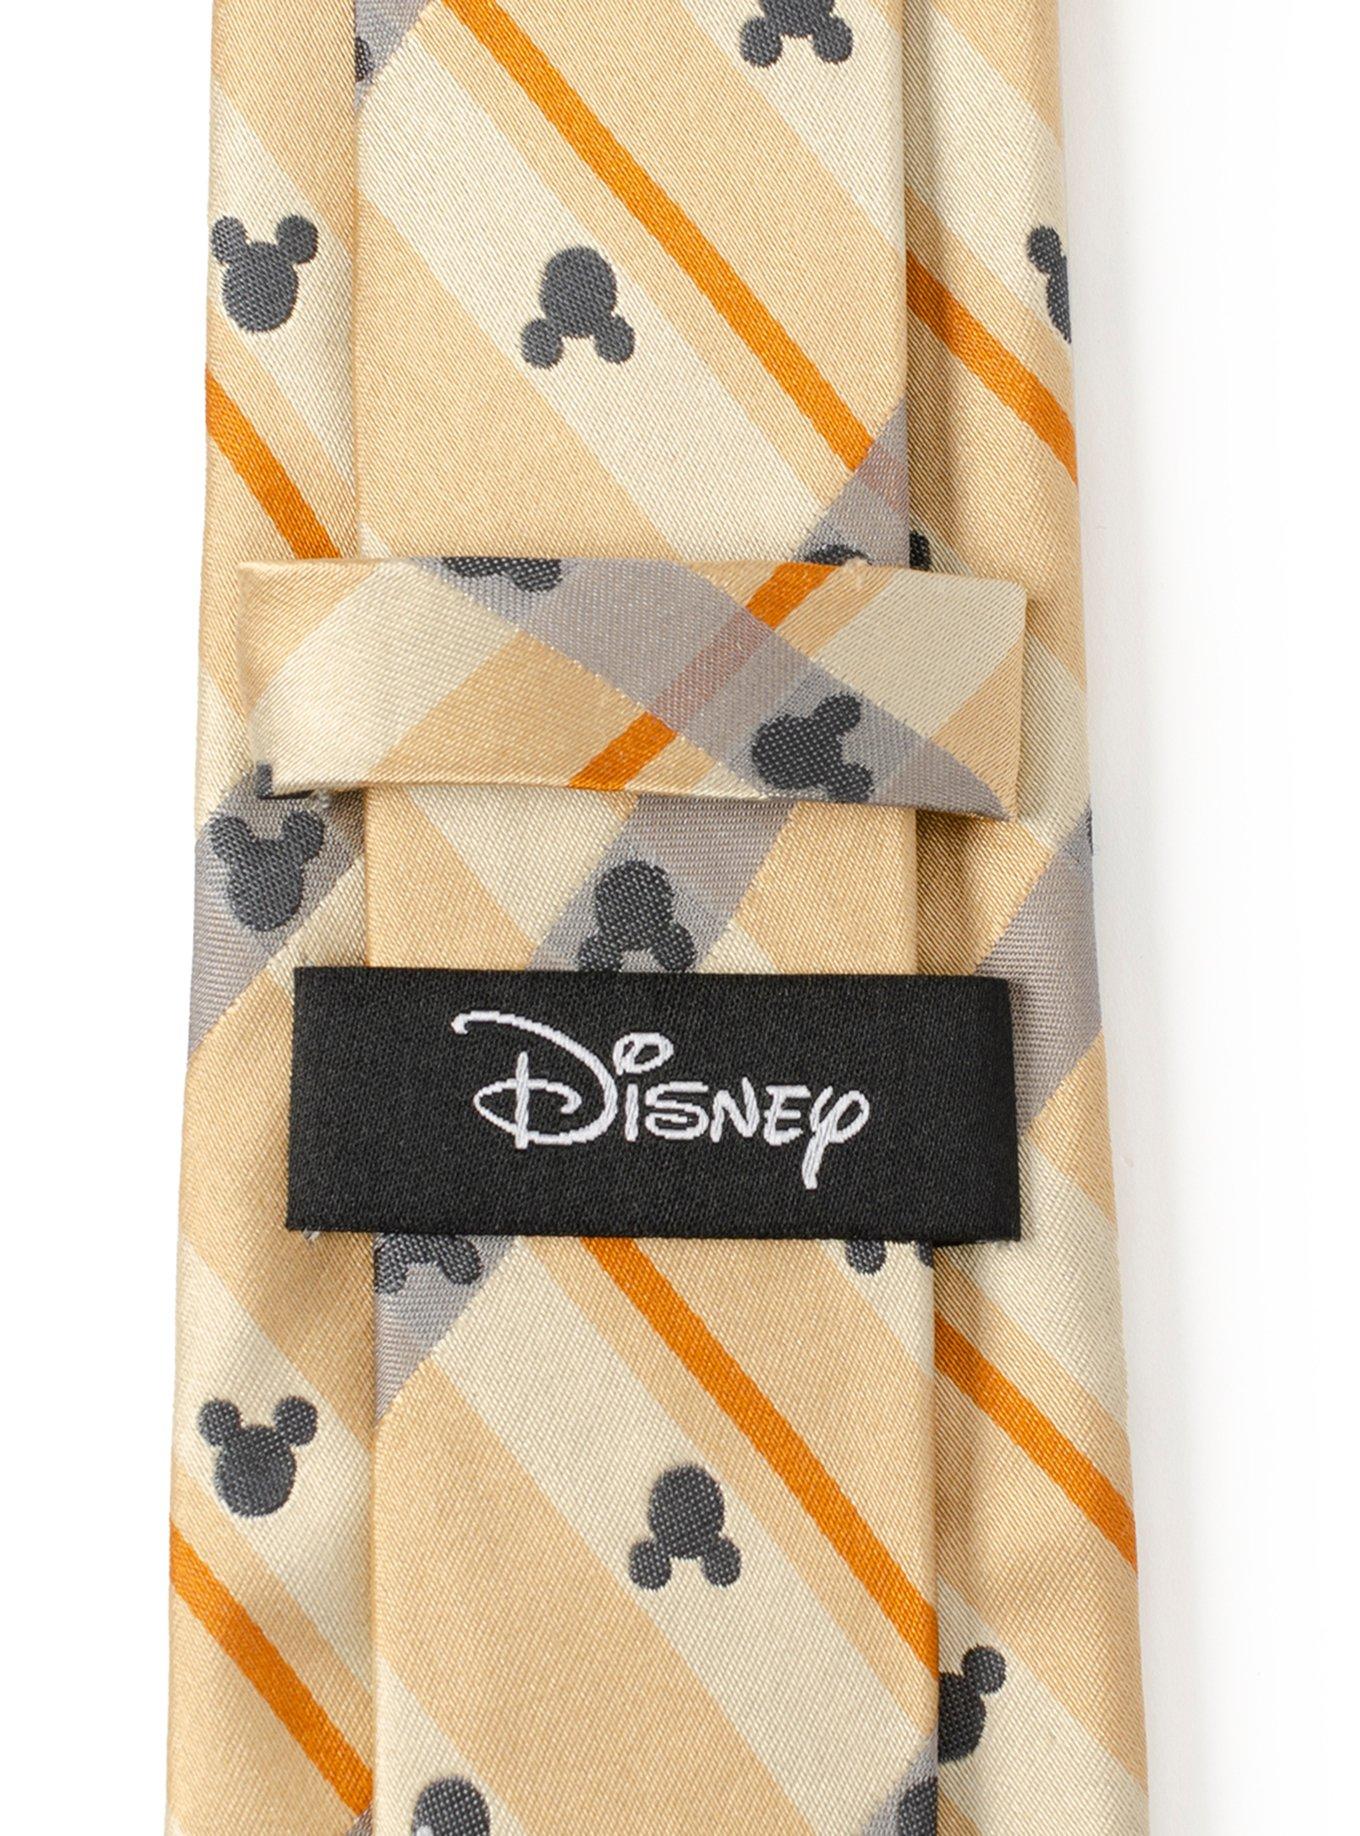 Disney Mickey Mouse Silhouette Tan Plaid Tie, , alternate